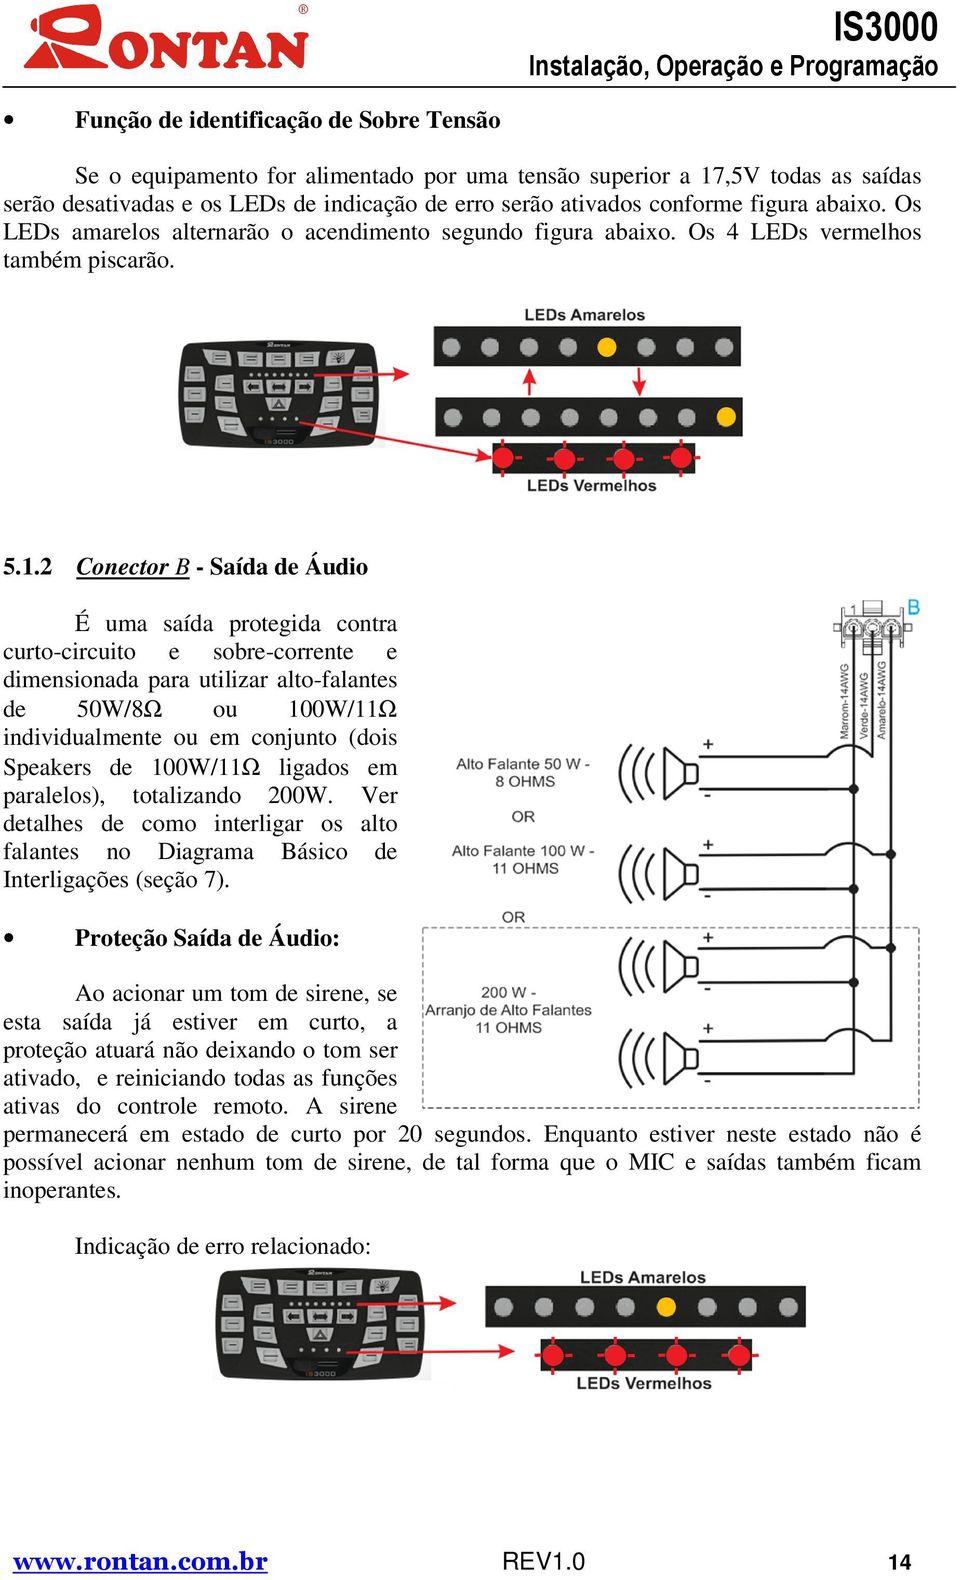 2 Conector B - Saída de Áudio É uma saída protegida contra curto-circuito e sobre-corrente e dimensionada para utilizar alto-falantes de 50W/8Ω ou 100W/11Ω individualmente ou em conjunto (dois